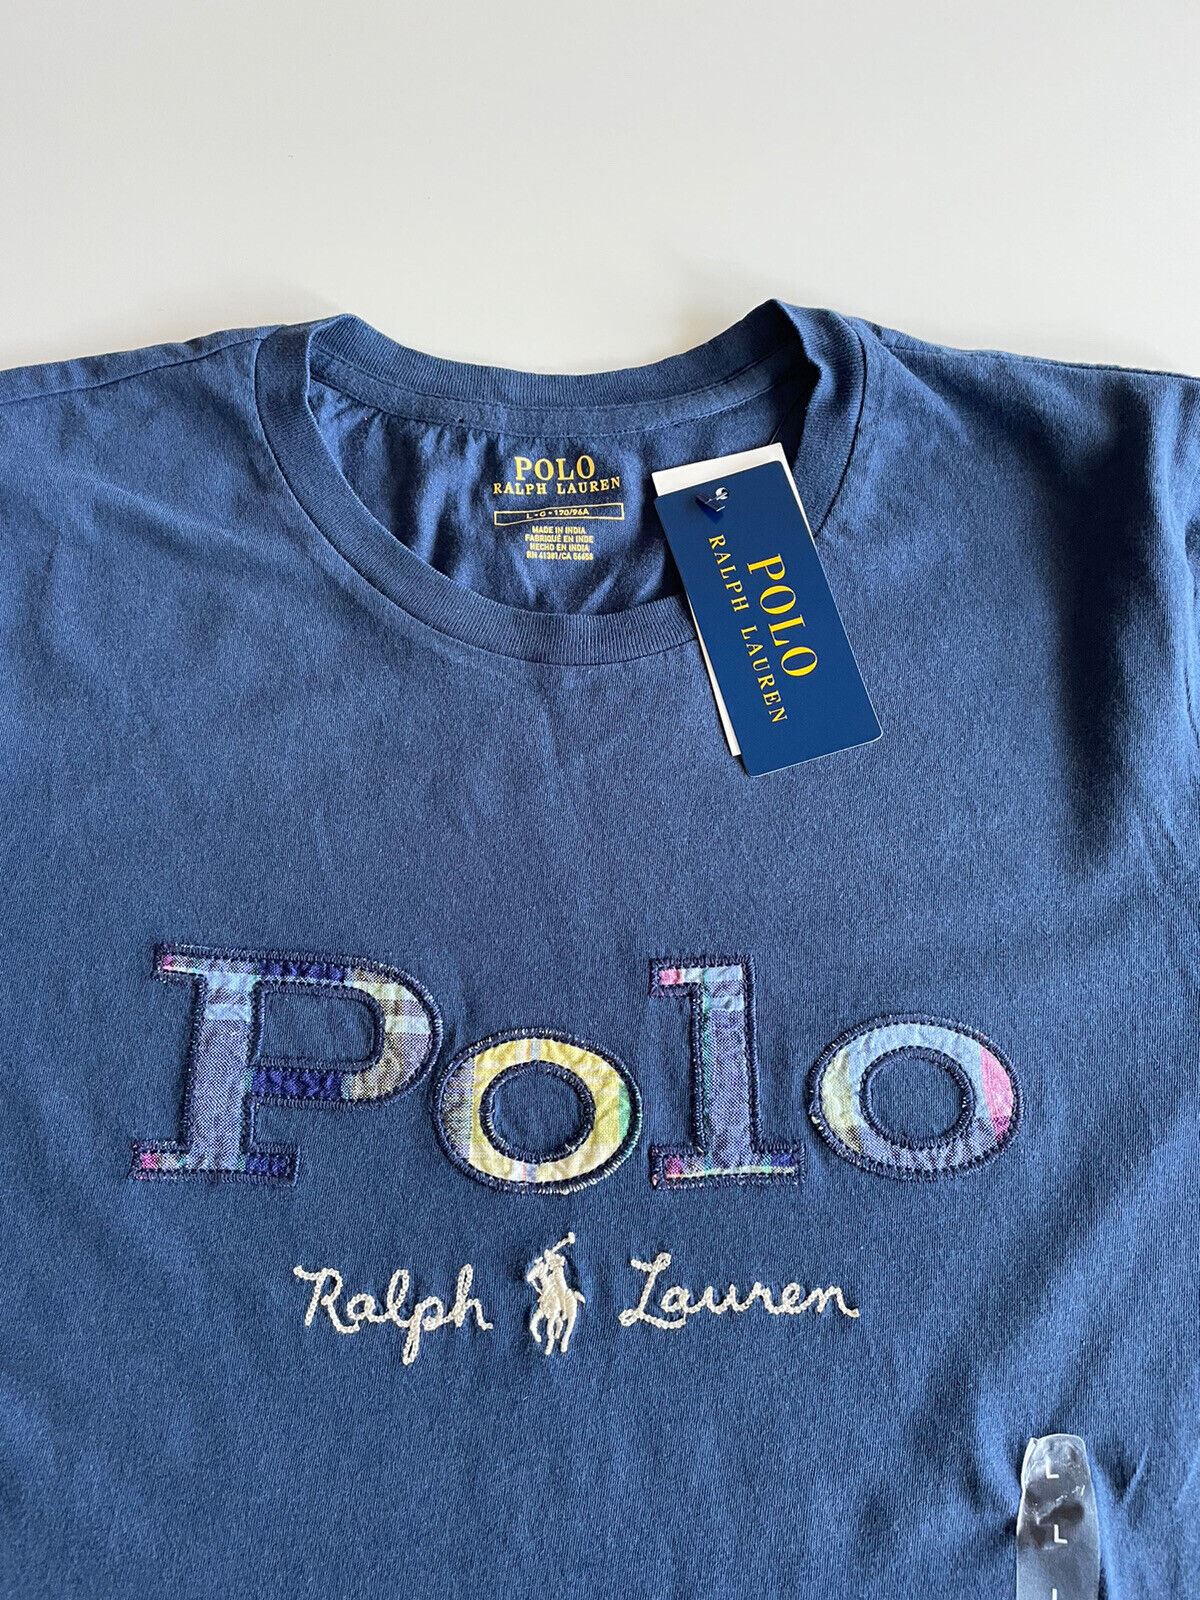 NWT $78 Polo Ralph Lauren Women's Short Sleeve Logo T-shirt Blue Large